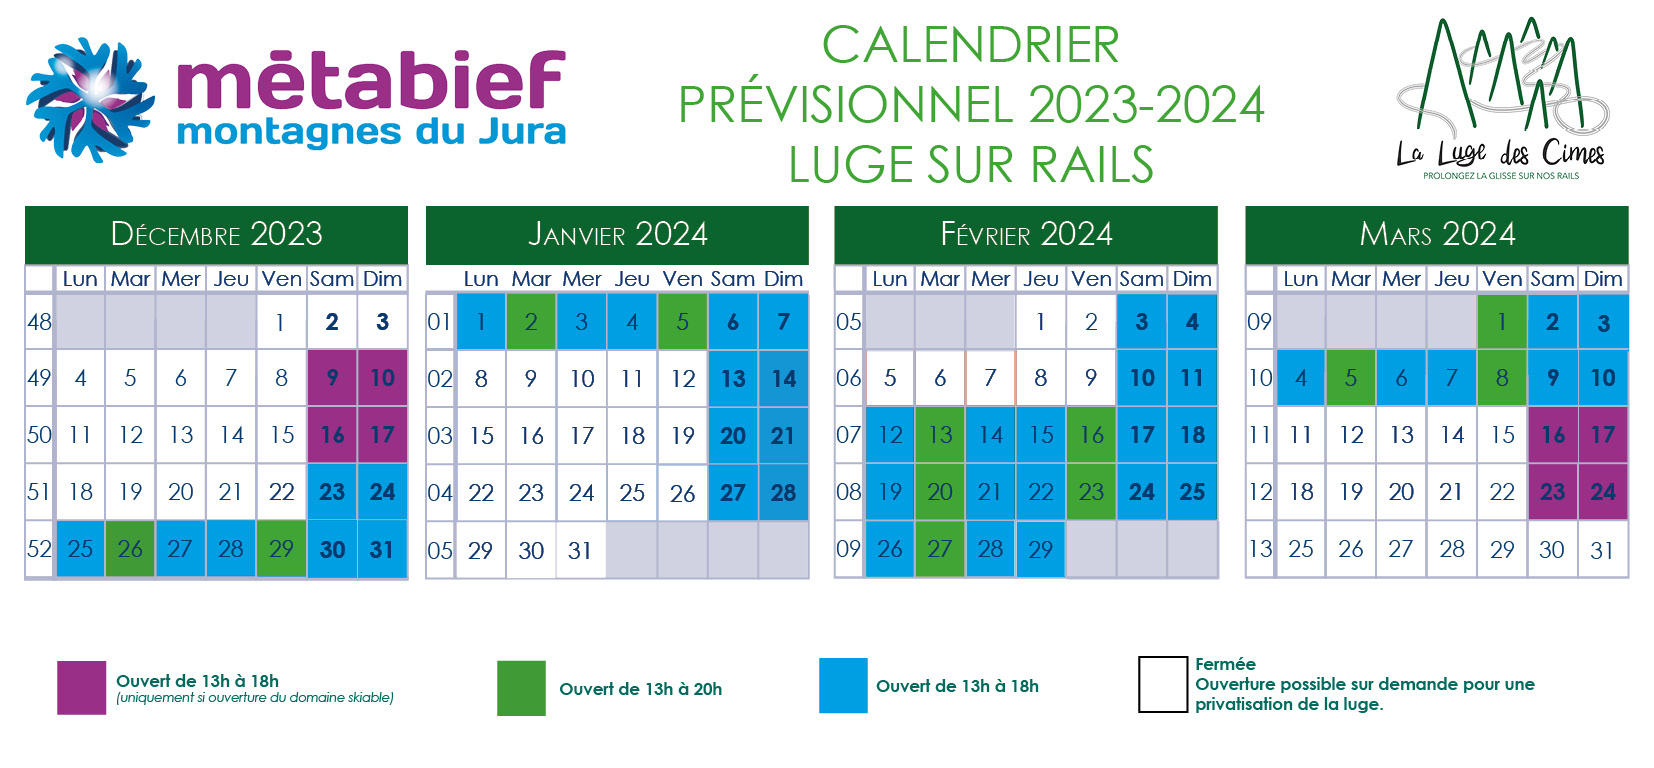 Calendrier prévisionnel des ouvertures luge sur rails - Saison hiver 2023-2024